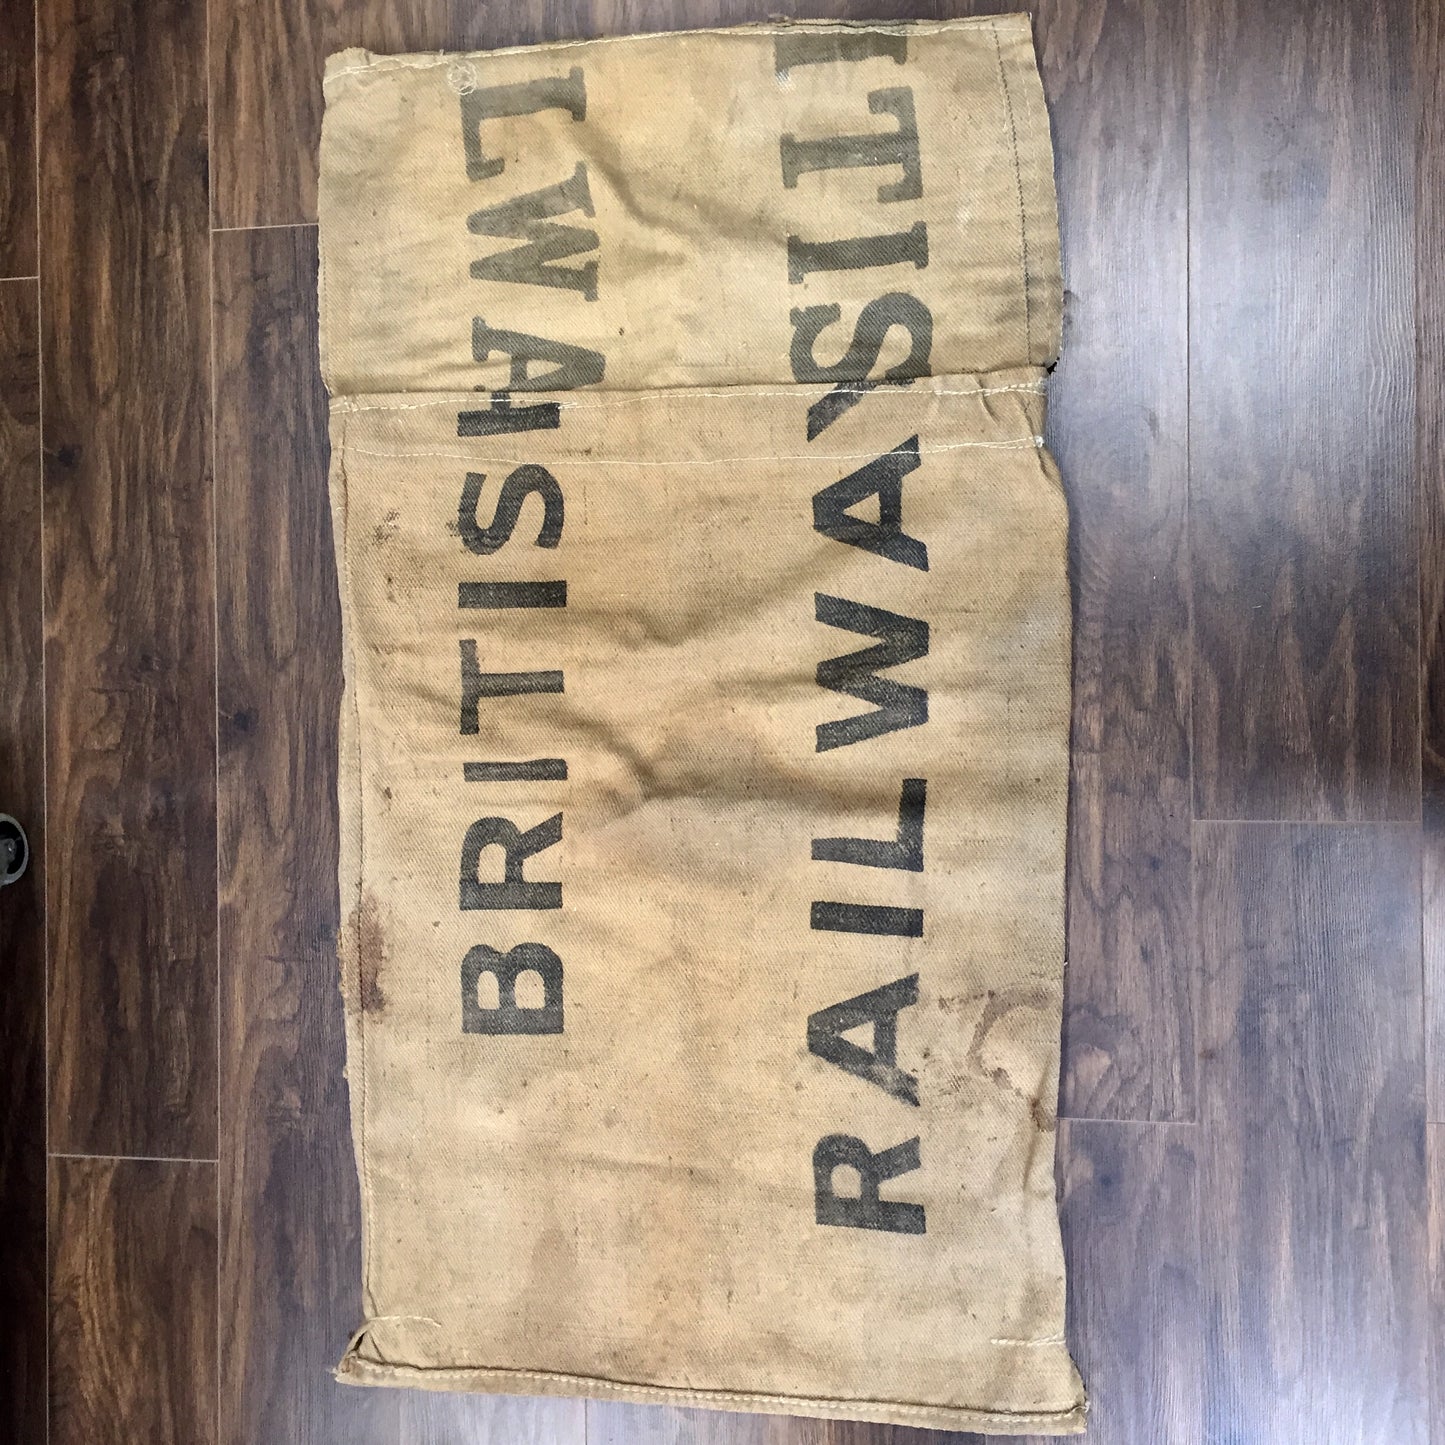 1950s British Railways mail sack